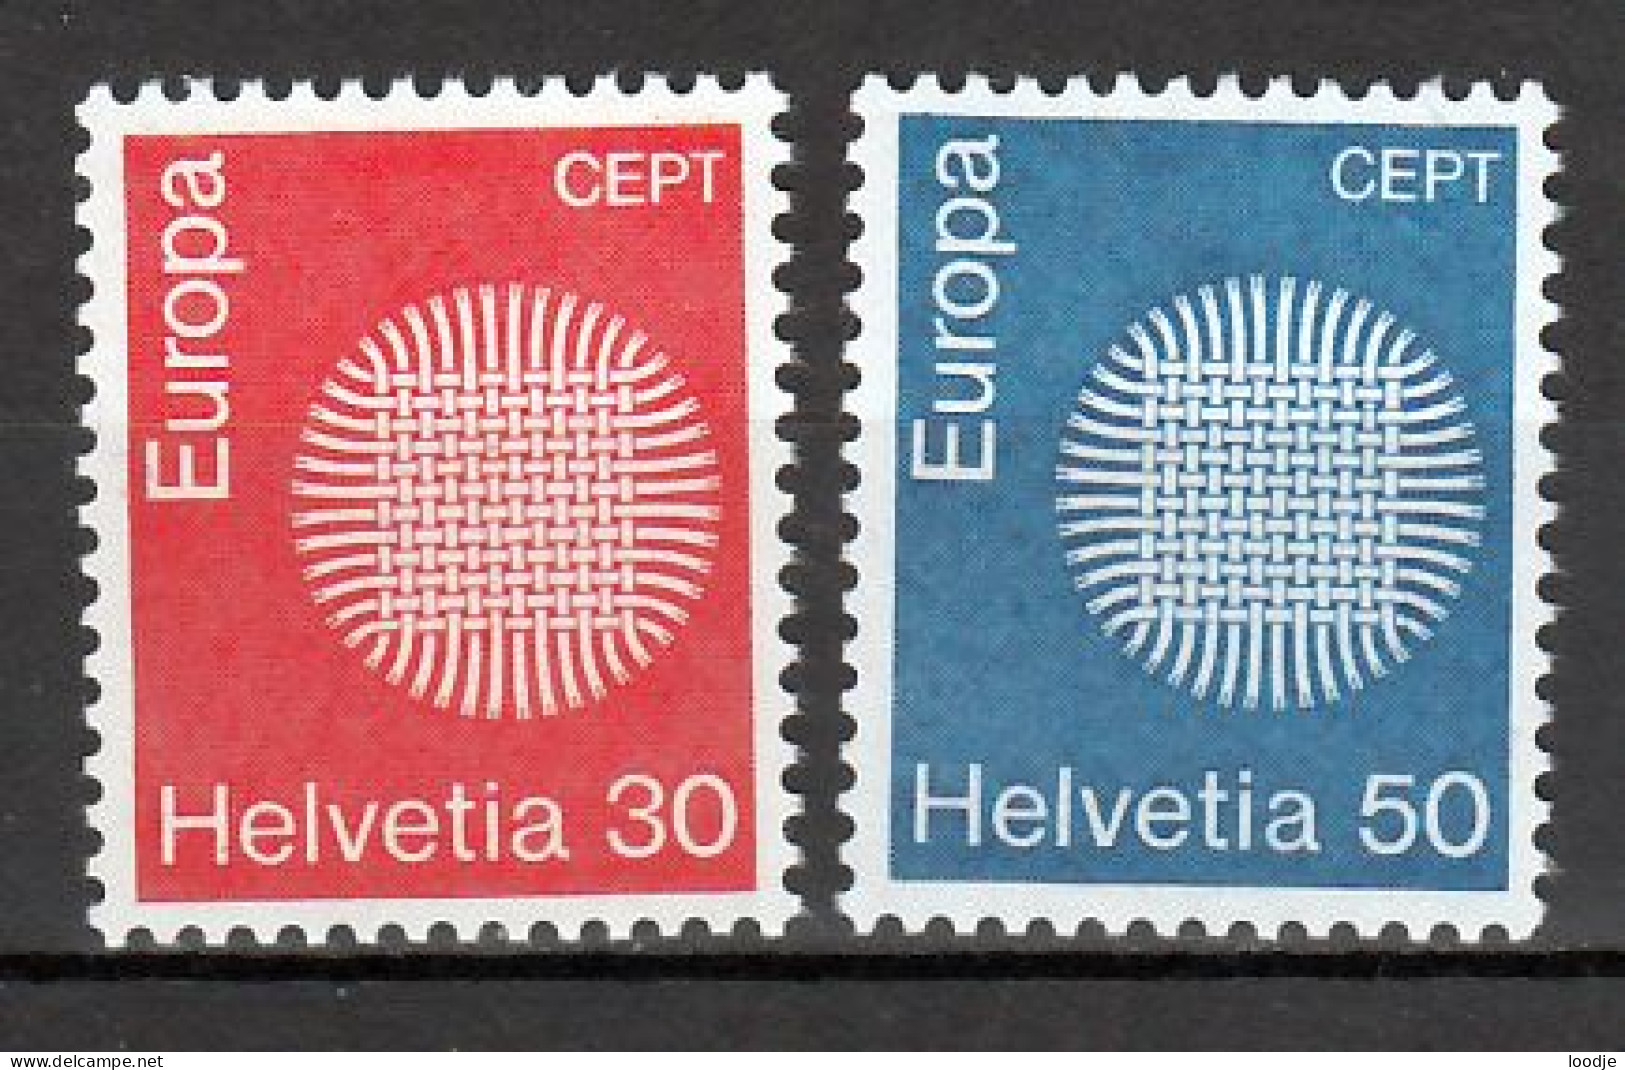 Zwitserland Europa Cept 1970 Postfris - 1970